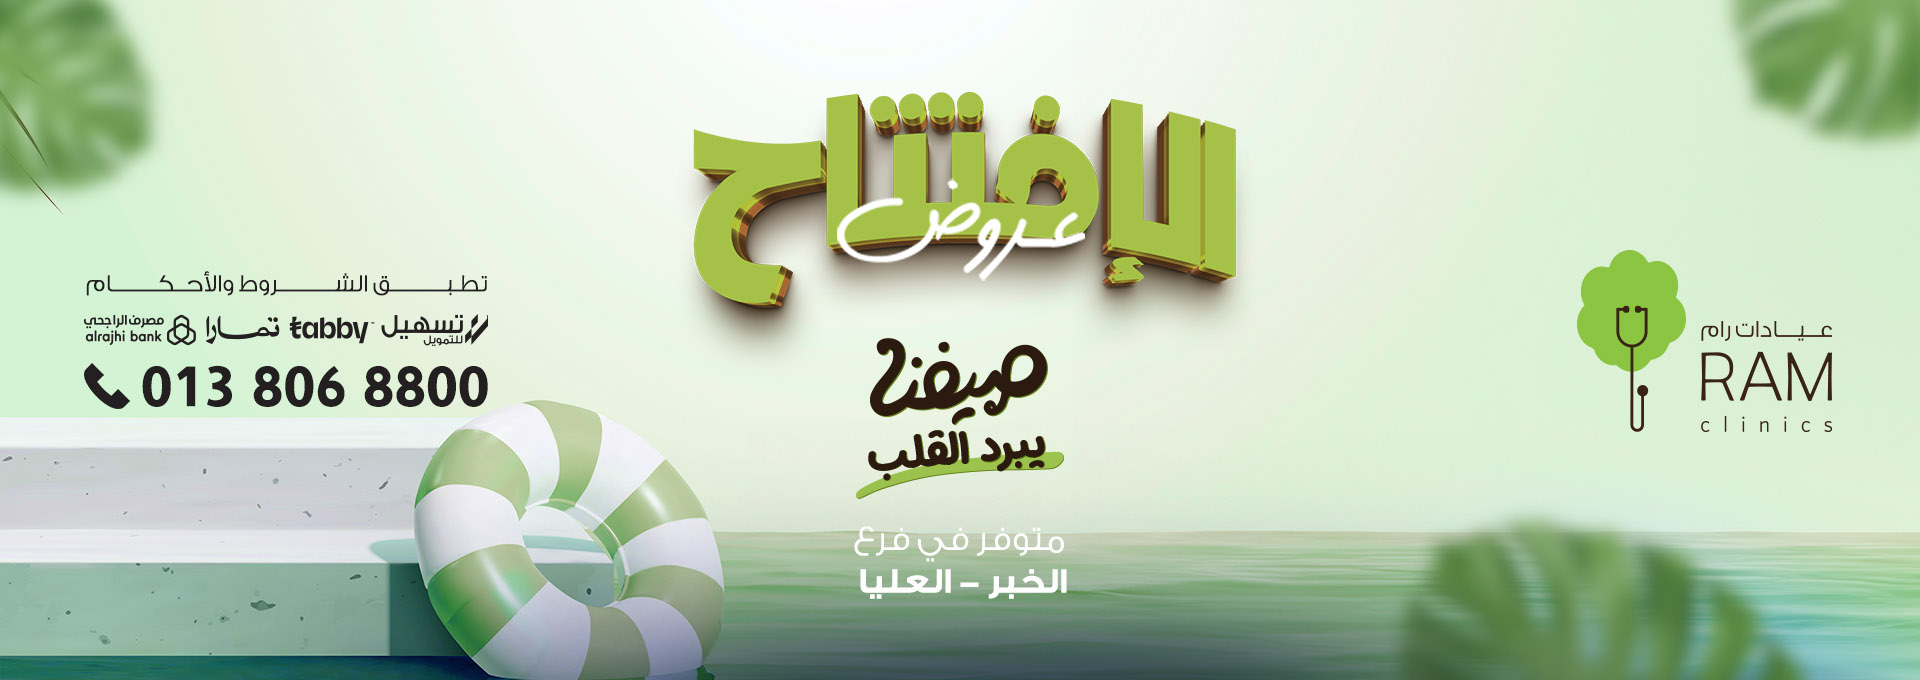 Opening offers - Al Khobar Olaya branch